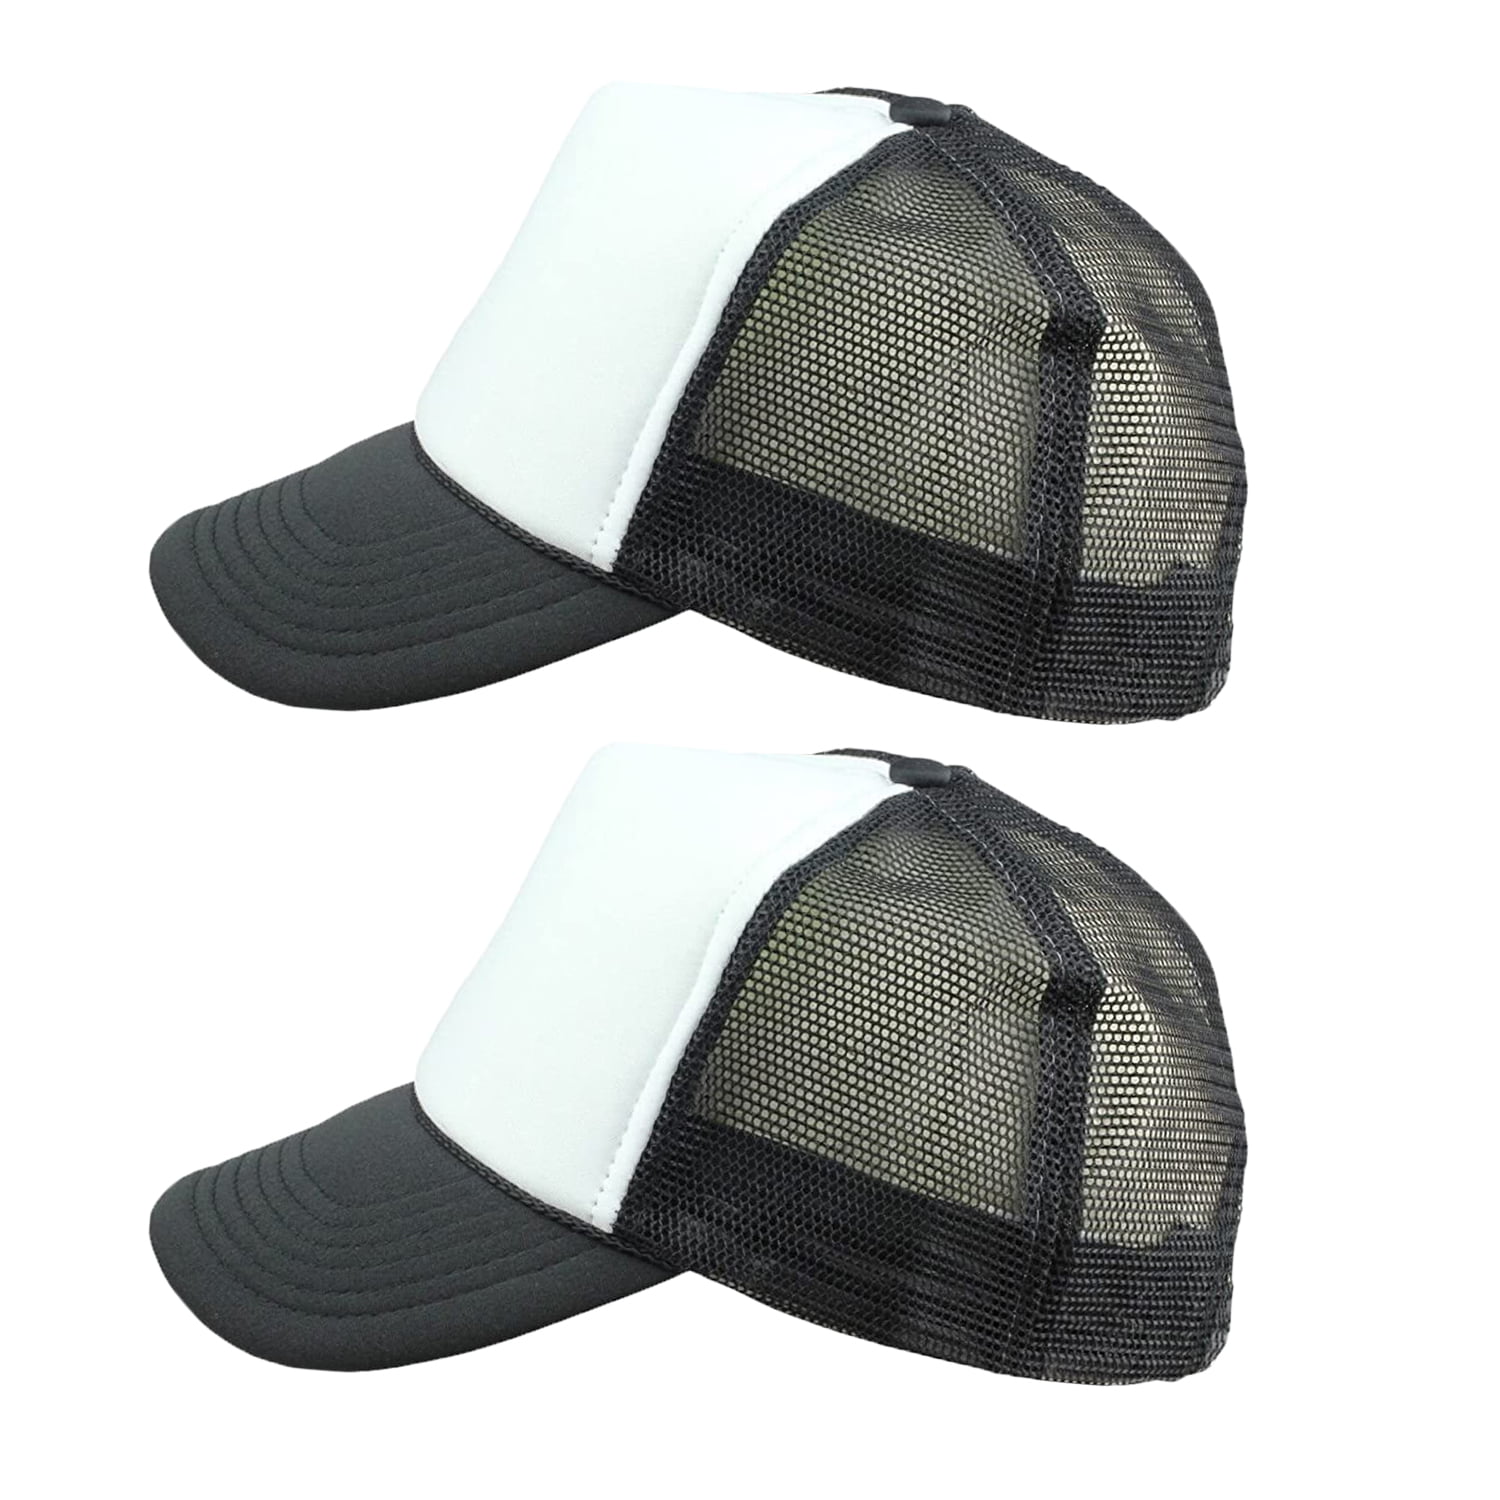 552 Luke C-Ombs Kids Adjustable Mesh Sports Hats Baseball Trucker Cap for Boys and Girls Black